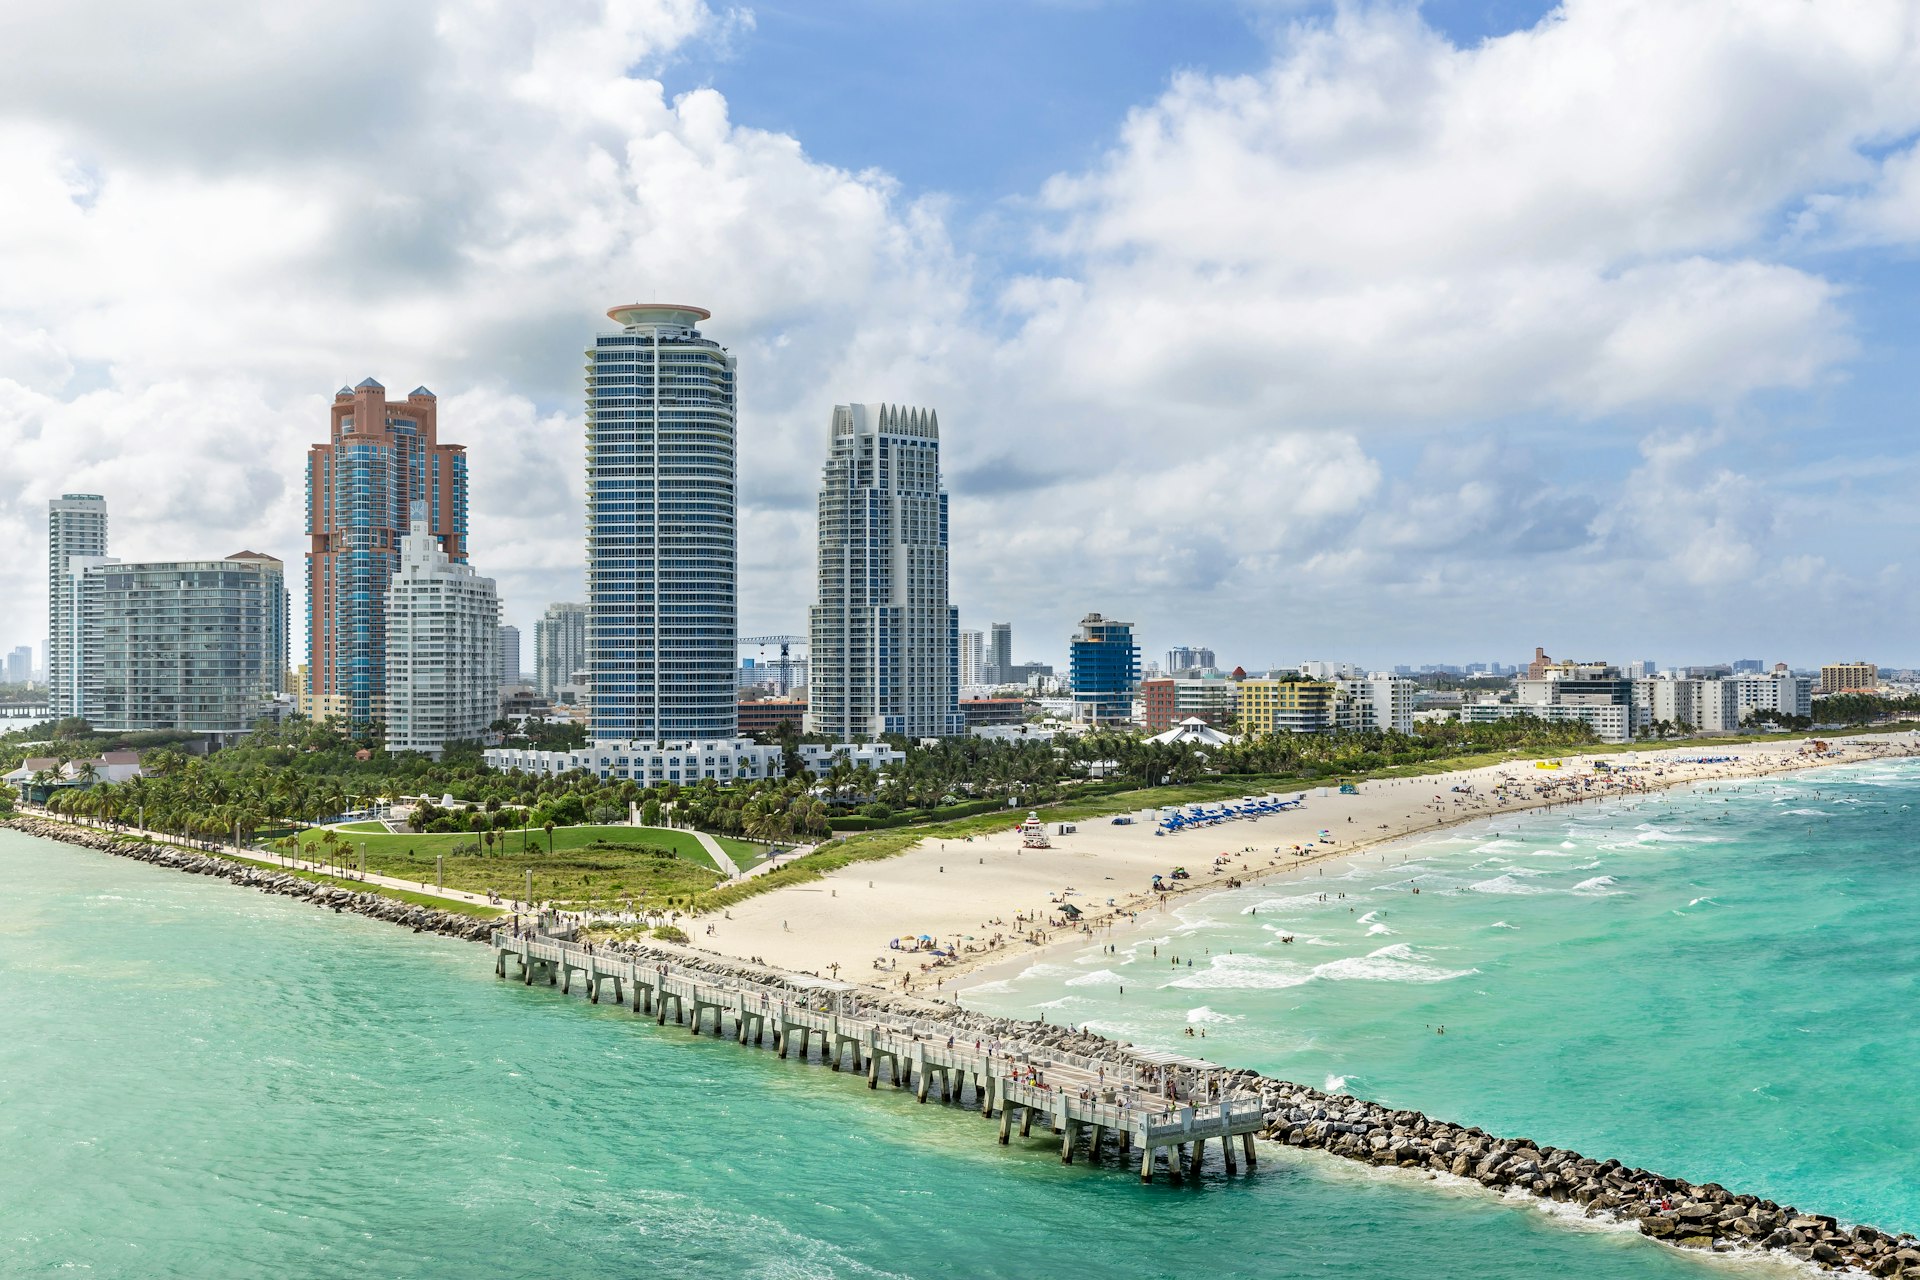 South Beach Miami from South Pointe Park, Florida, USA